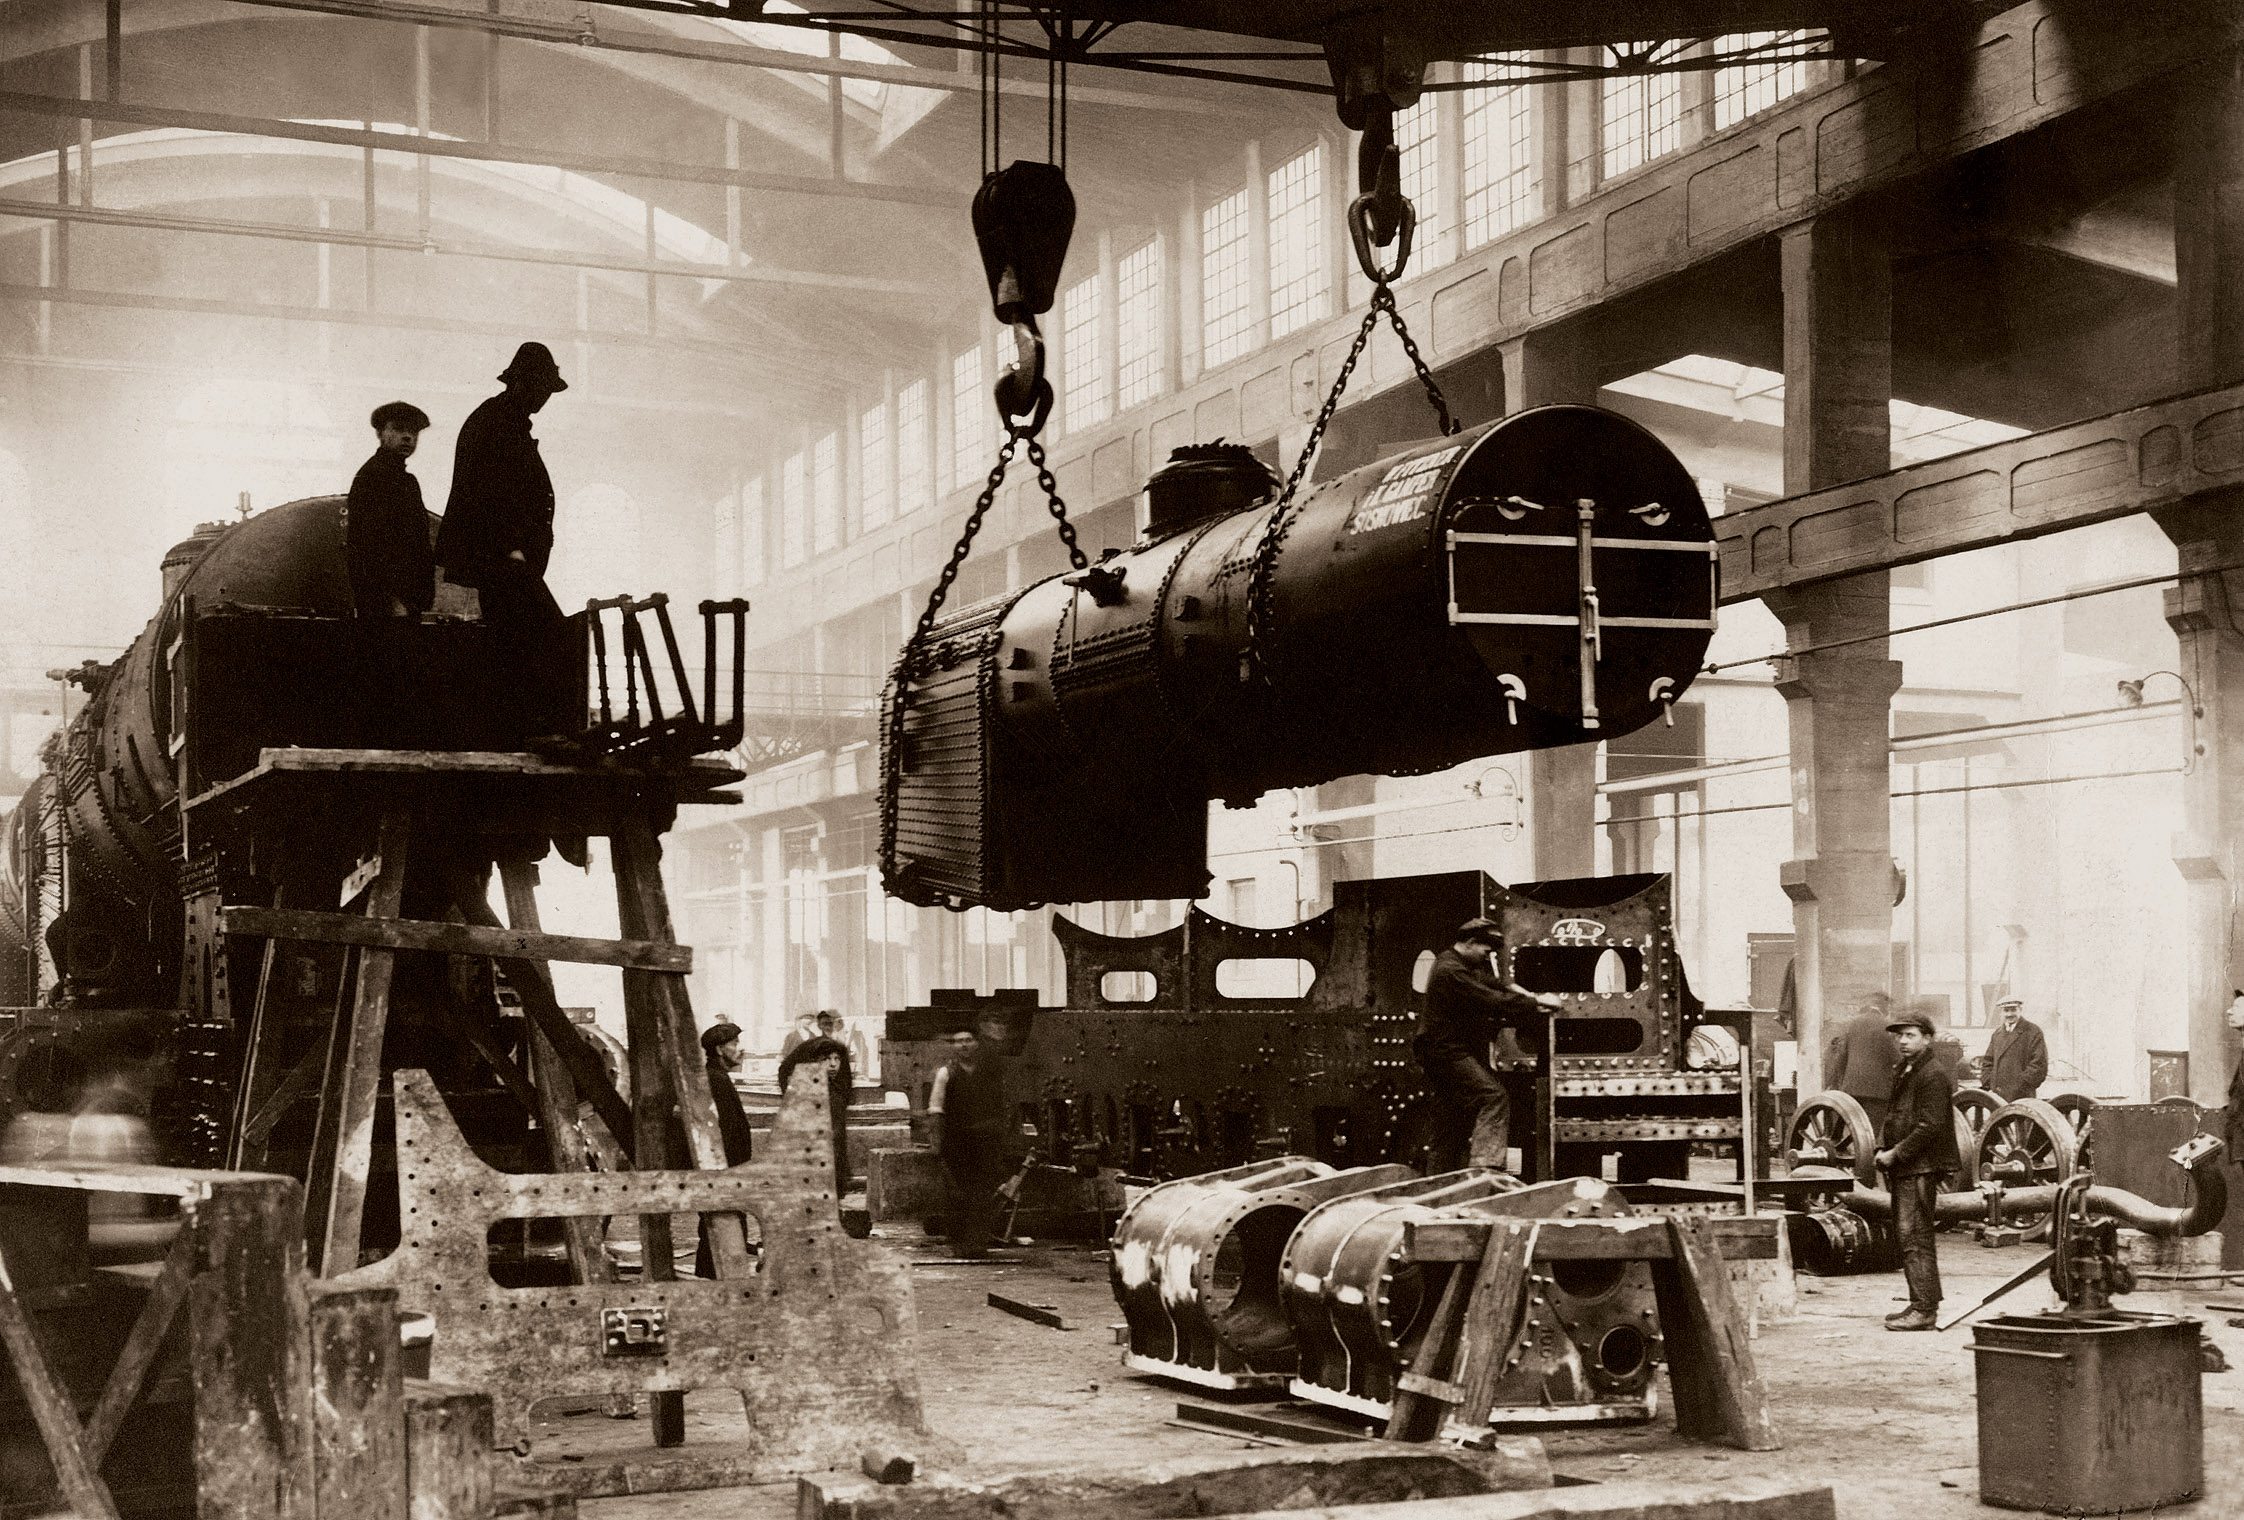 Wnętrze hali montażu w Pierwszej Fabryce Lokomotyw w Polsce - Chrzanów, lata 20. XX w. / Inside the assembly room of the First Steam Locomotives Factory in Poland in Chrzanów - 1920s